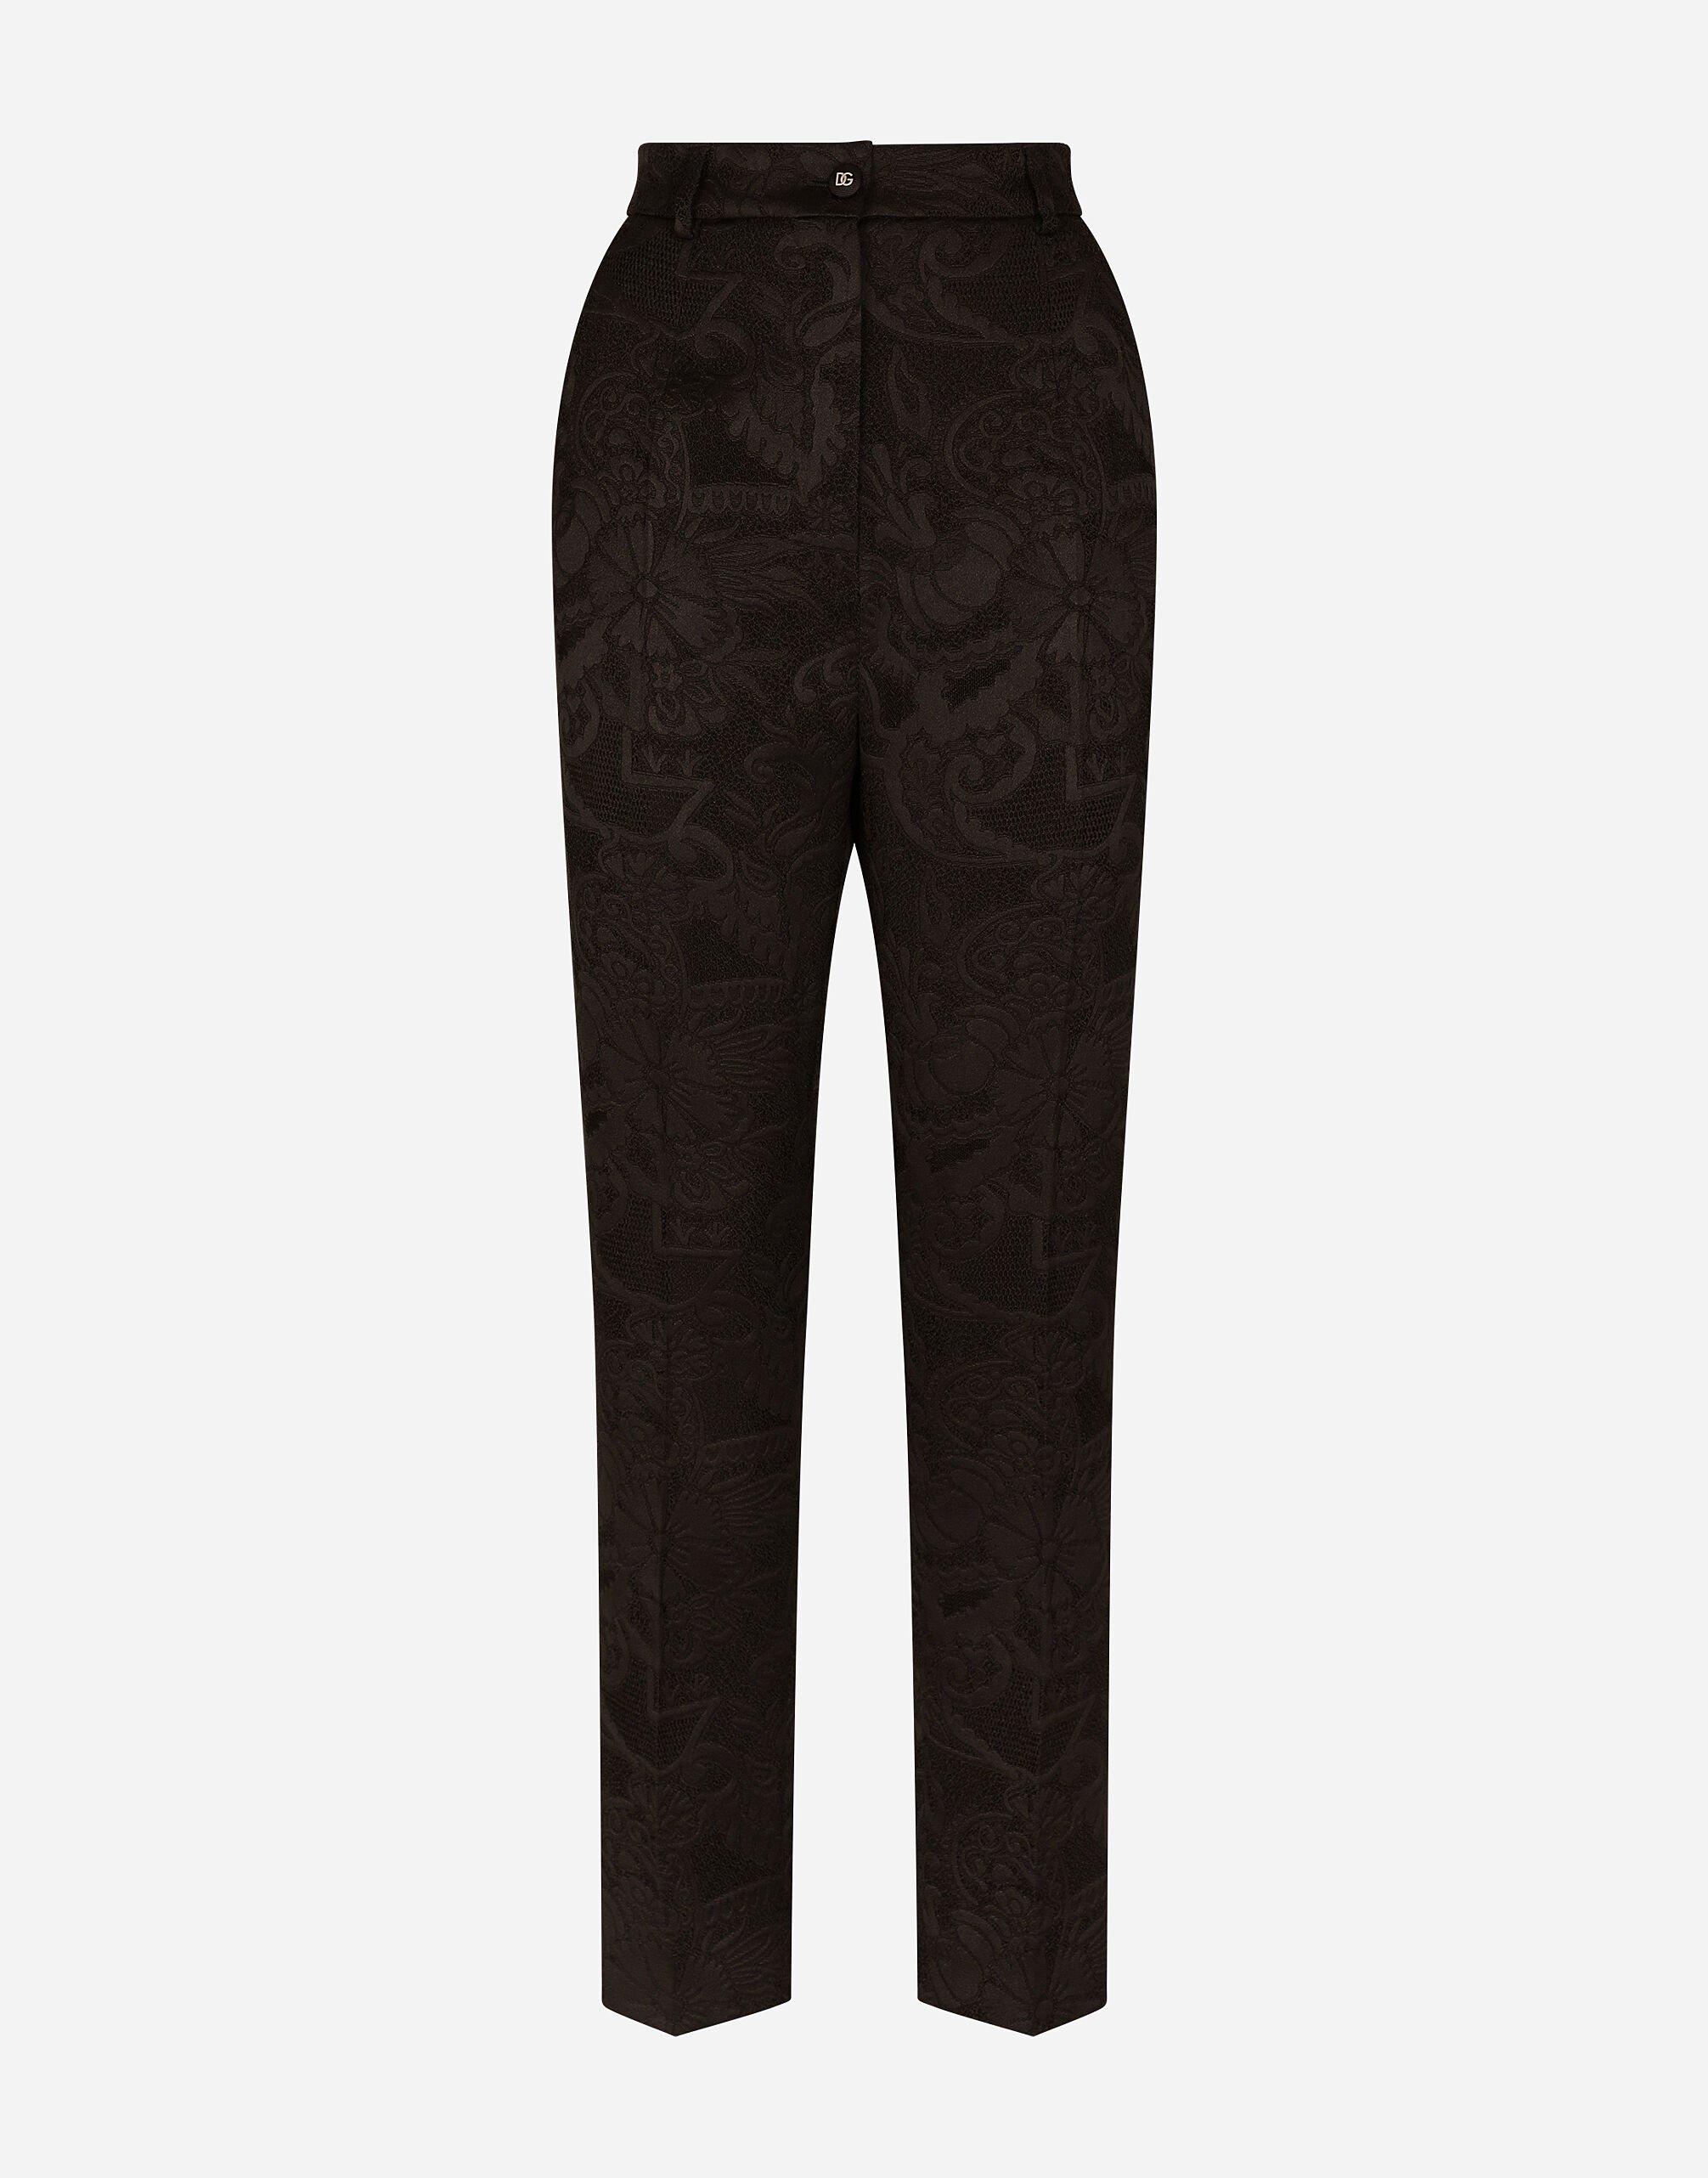 Dolce & Gabbana Floral jacquard pants Black FTAG1TG9921